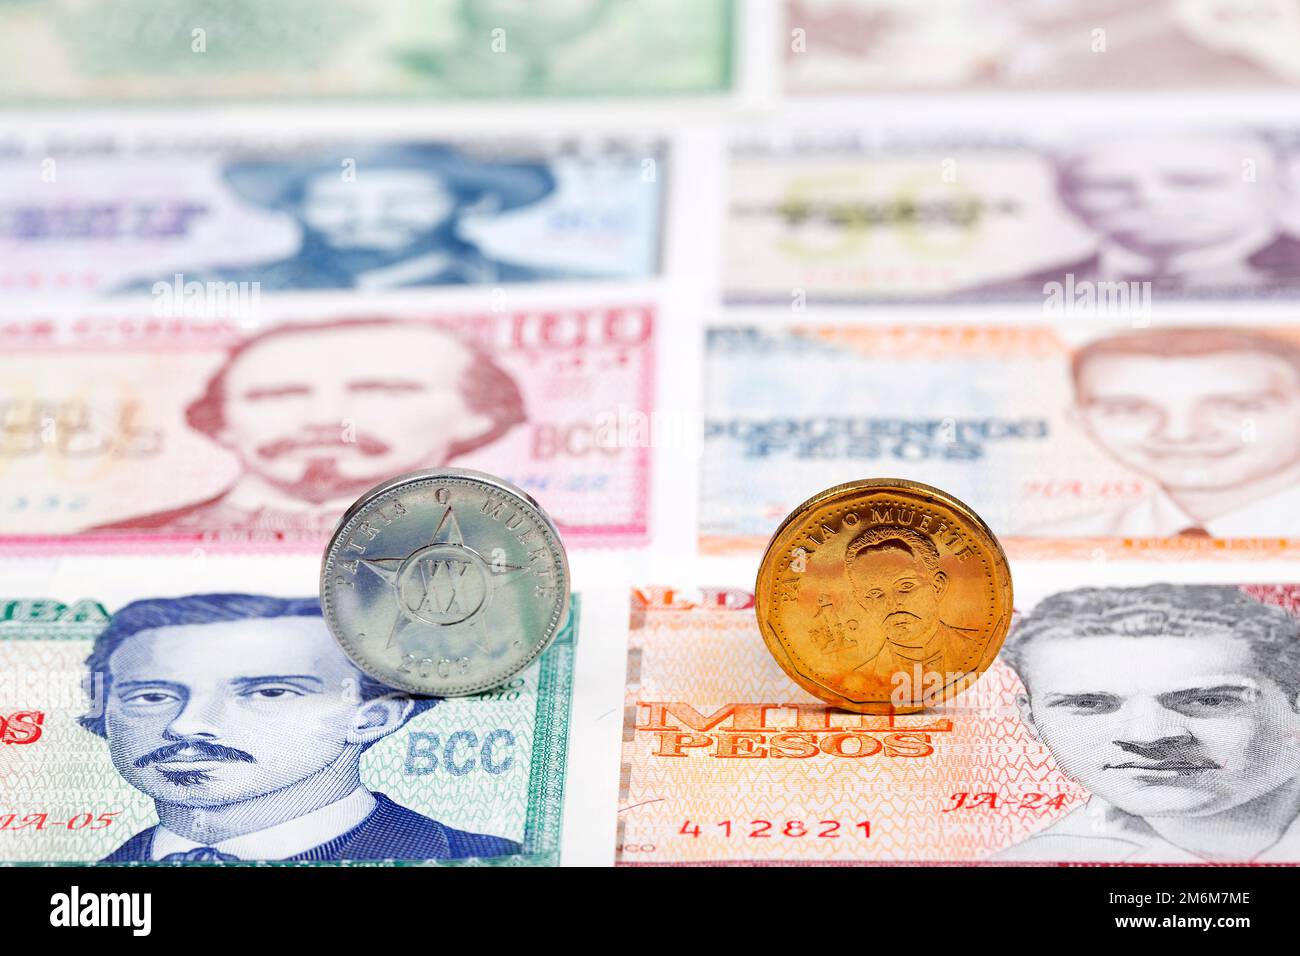 Кубинское песо к доллару на сегодня